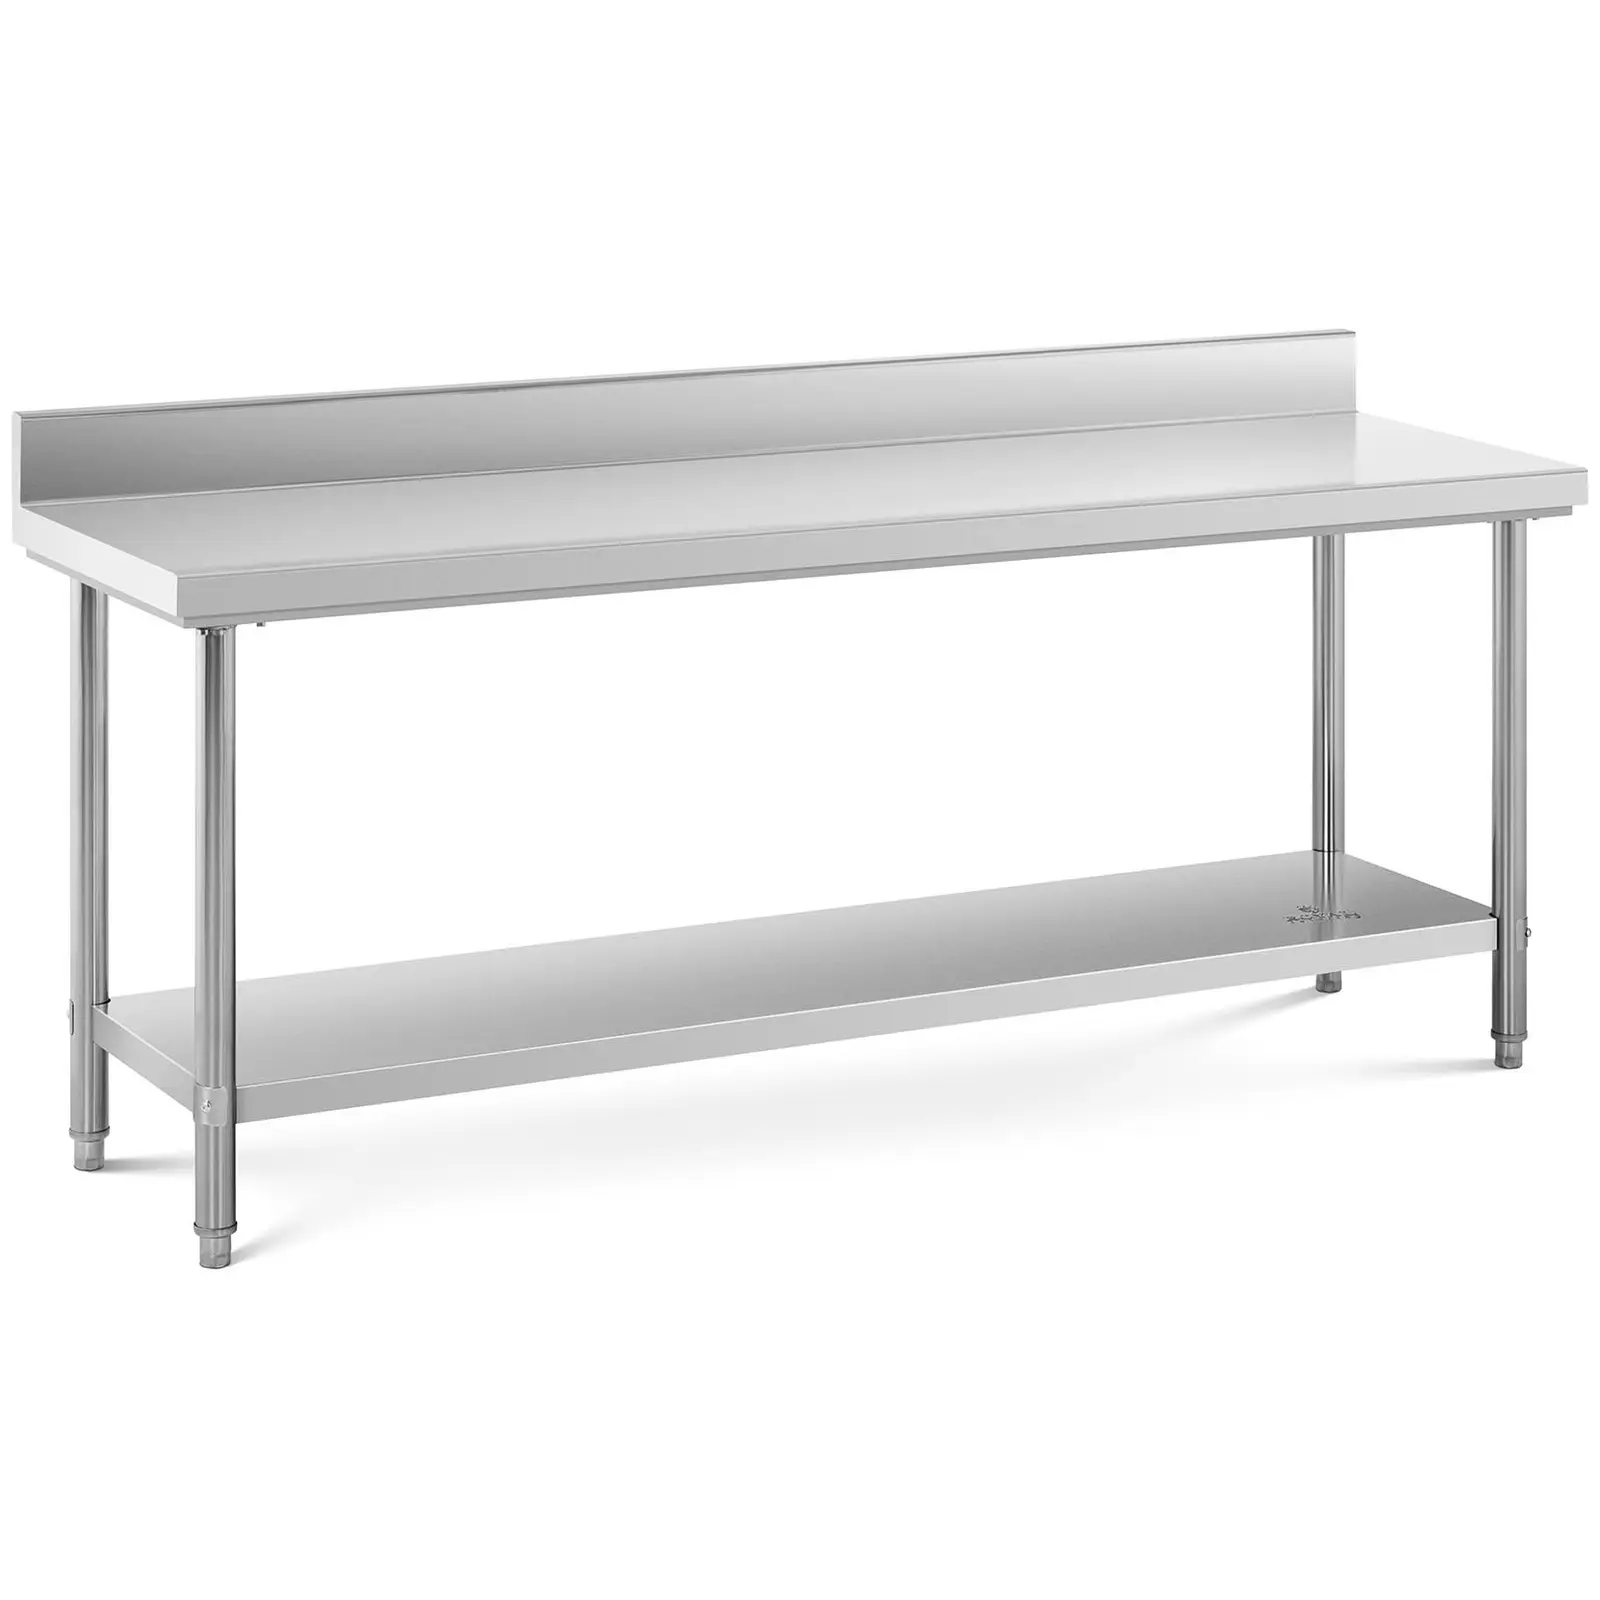 Pracovný stôl z nehrdzavejúcej ocele - 200 x 60 cm - stojan - nosnosť 240 kg